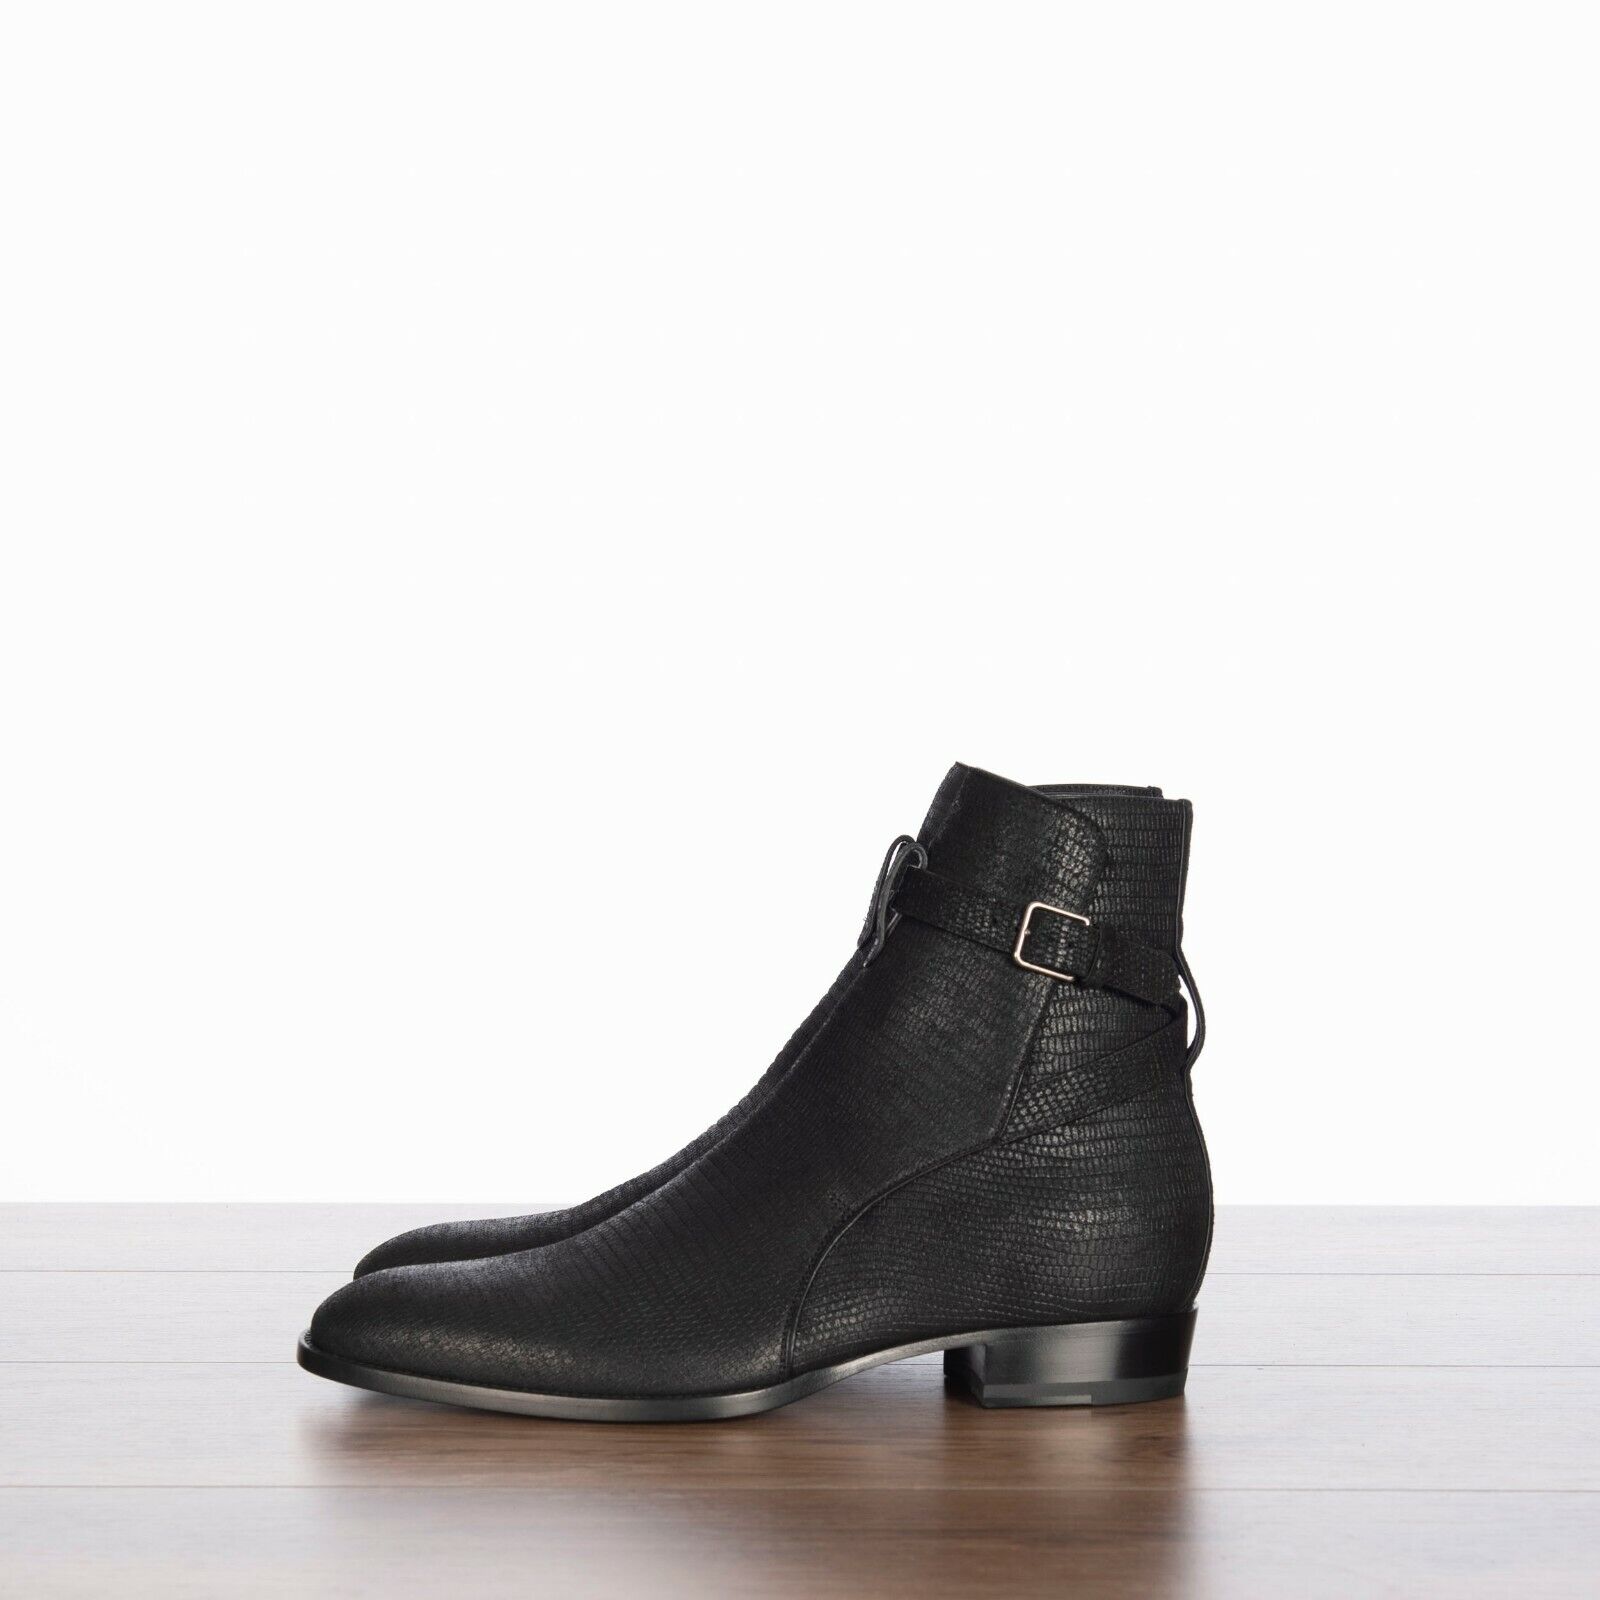 SAINT LAURENT PARIS 1095$ Wyatt Jodhpur Boots In Black Tejus-Embossed Suede